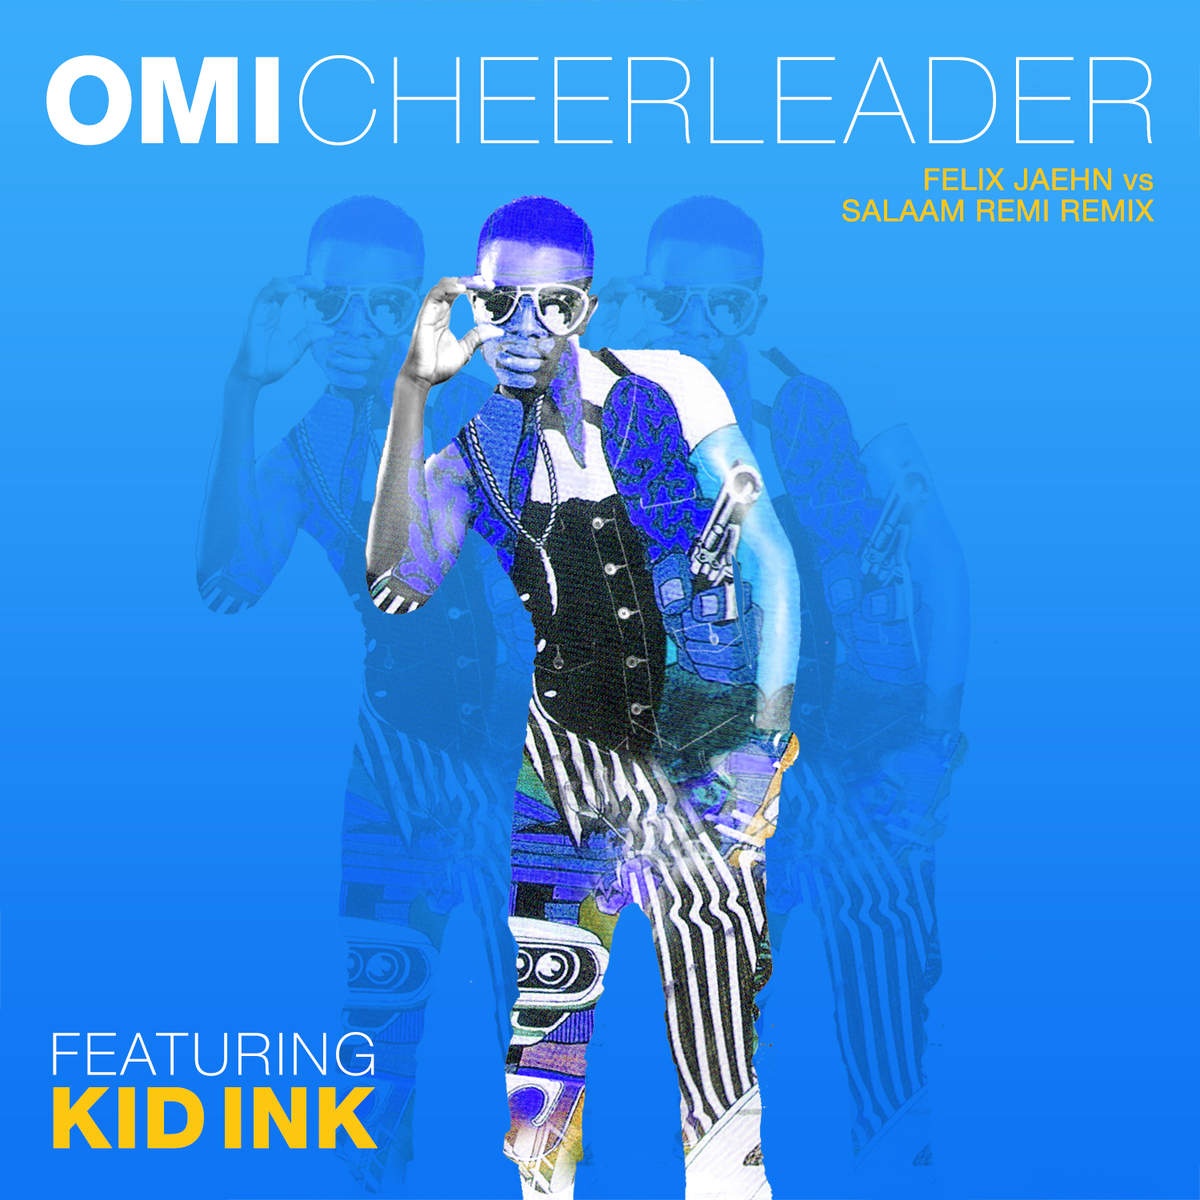 Cheerleader (feat. Kid Ink) [Felix Jaehn vs Salaam Remi Remix]